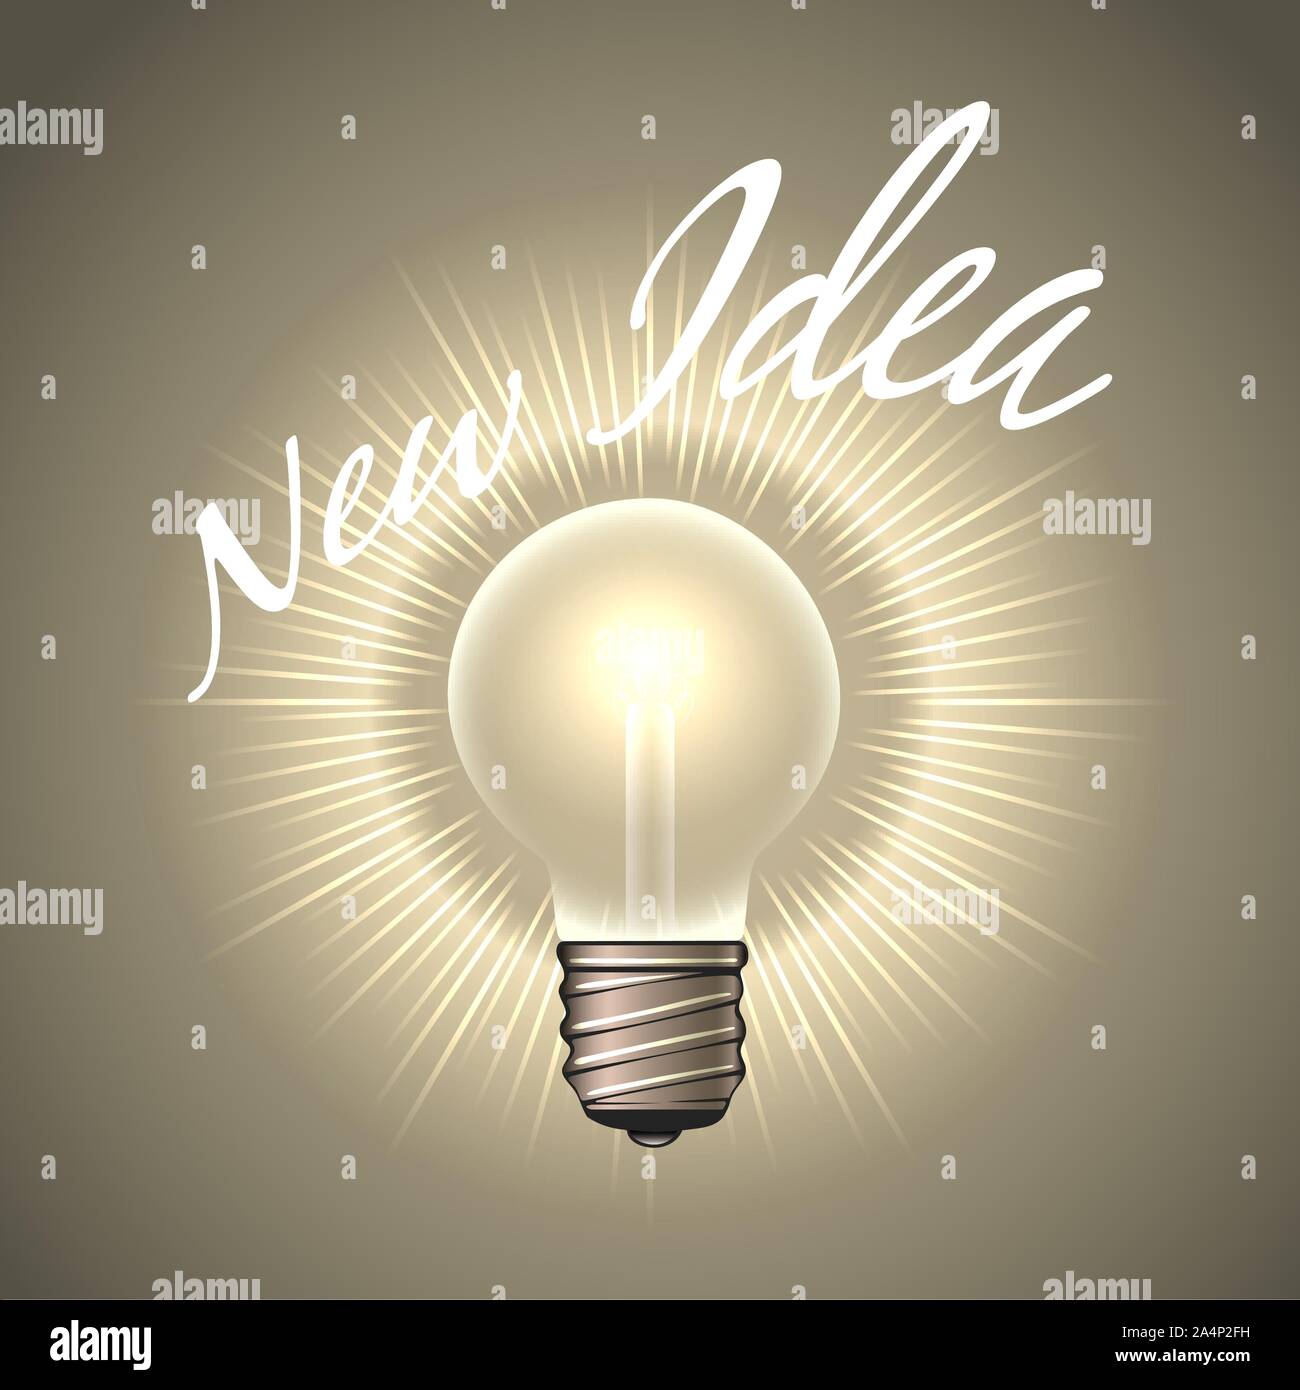 Elektrische Glühbirne mit Fassung neue Idee. Die menschliche Kreativität oder Inspiration Konzept Emblem. Vector Illustration. Stock Vektor